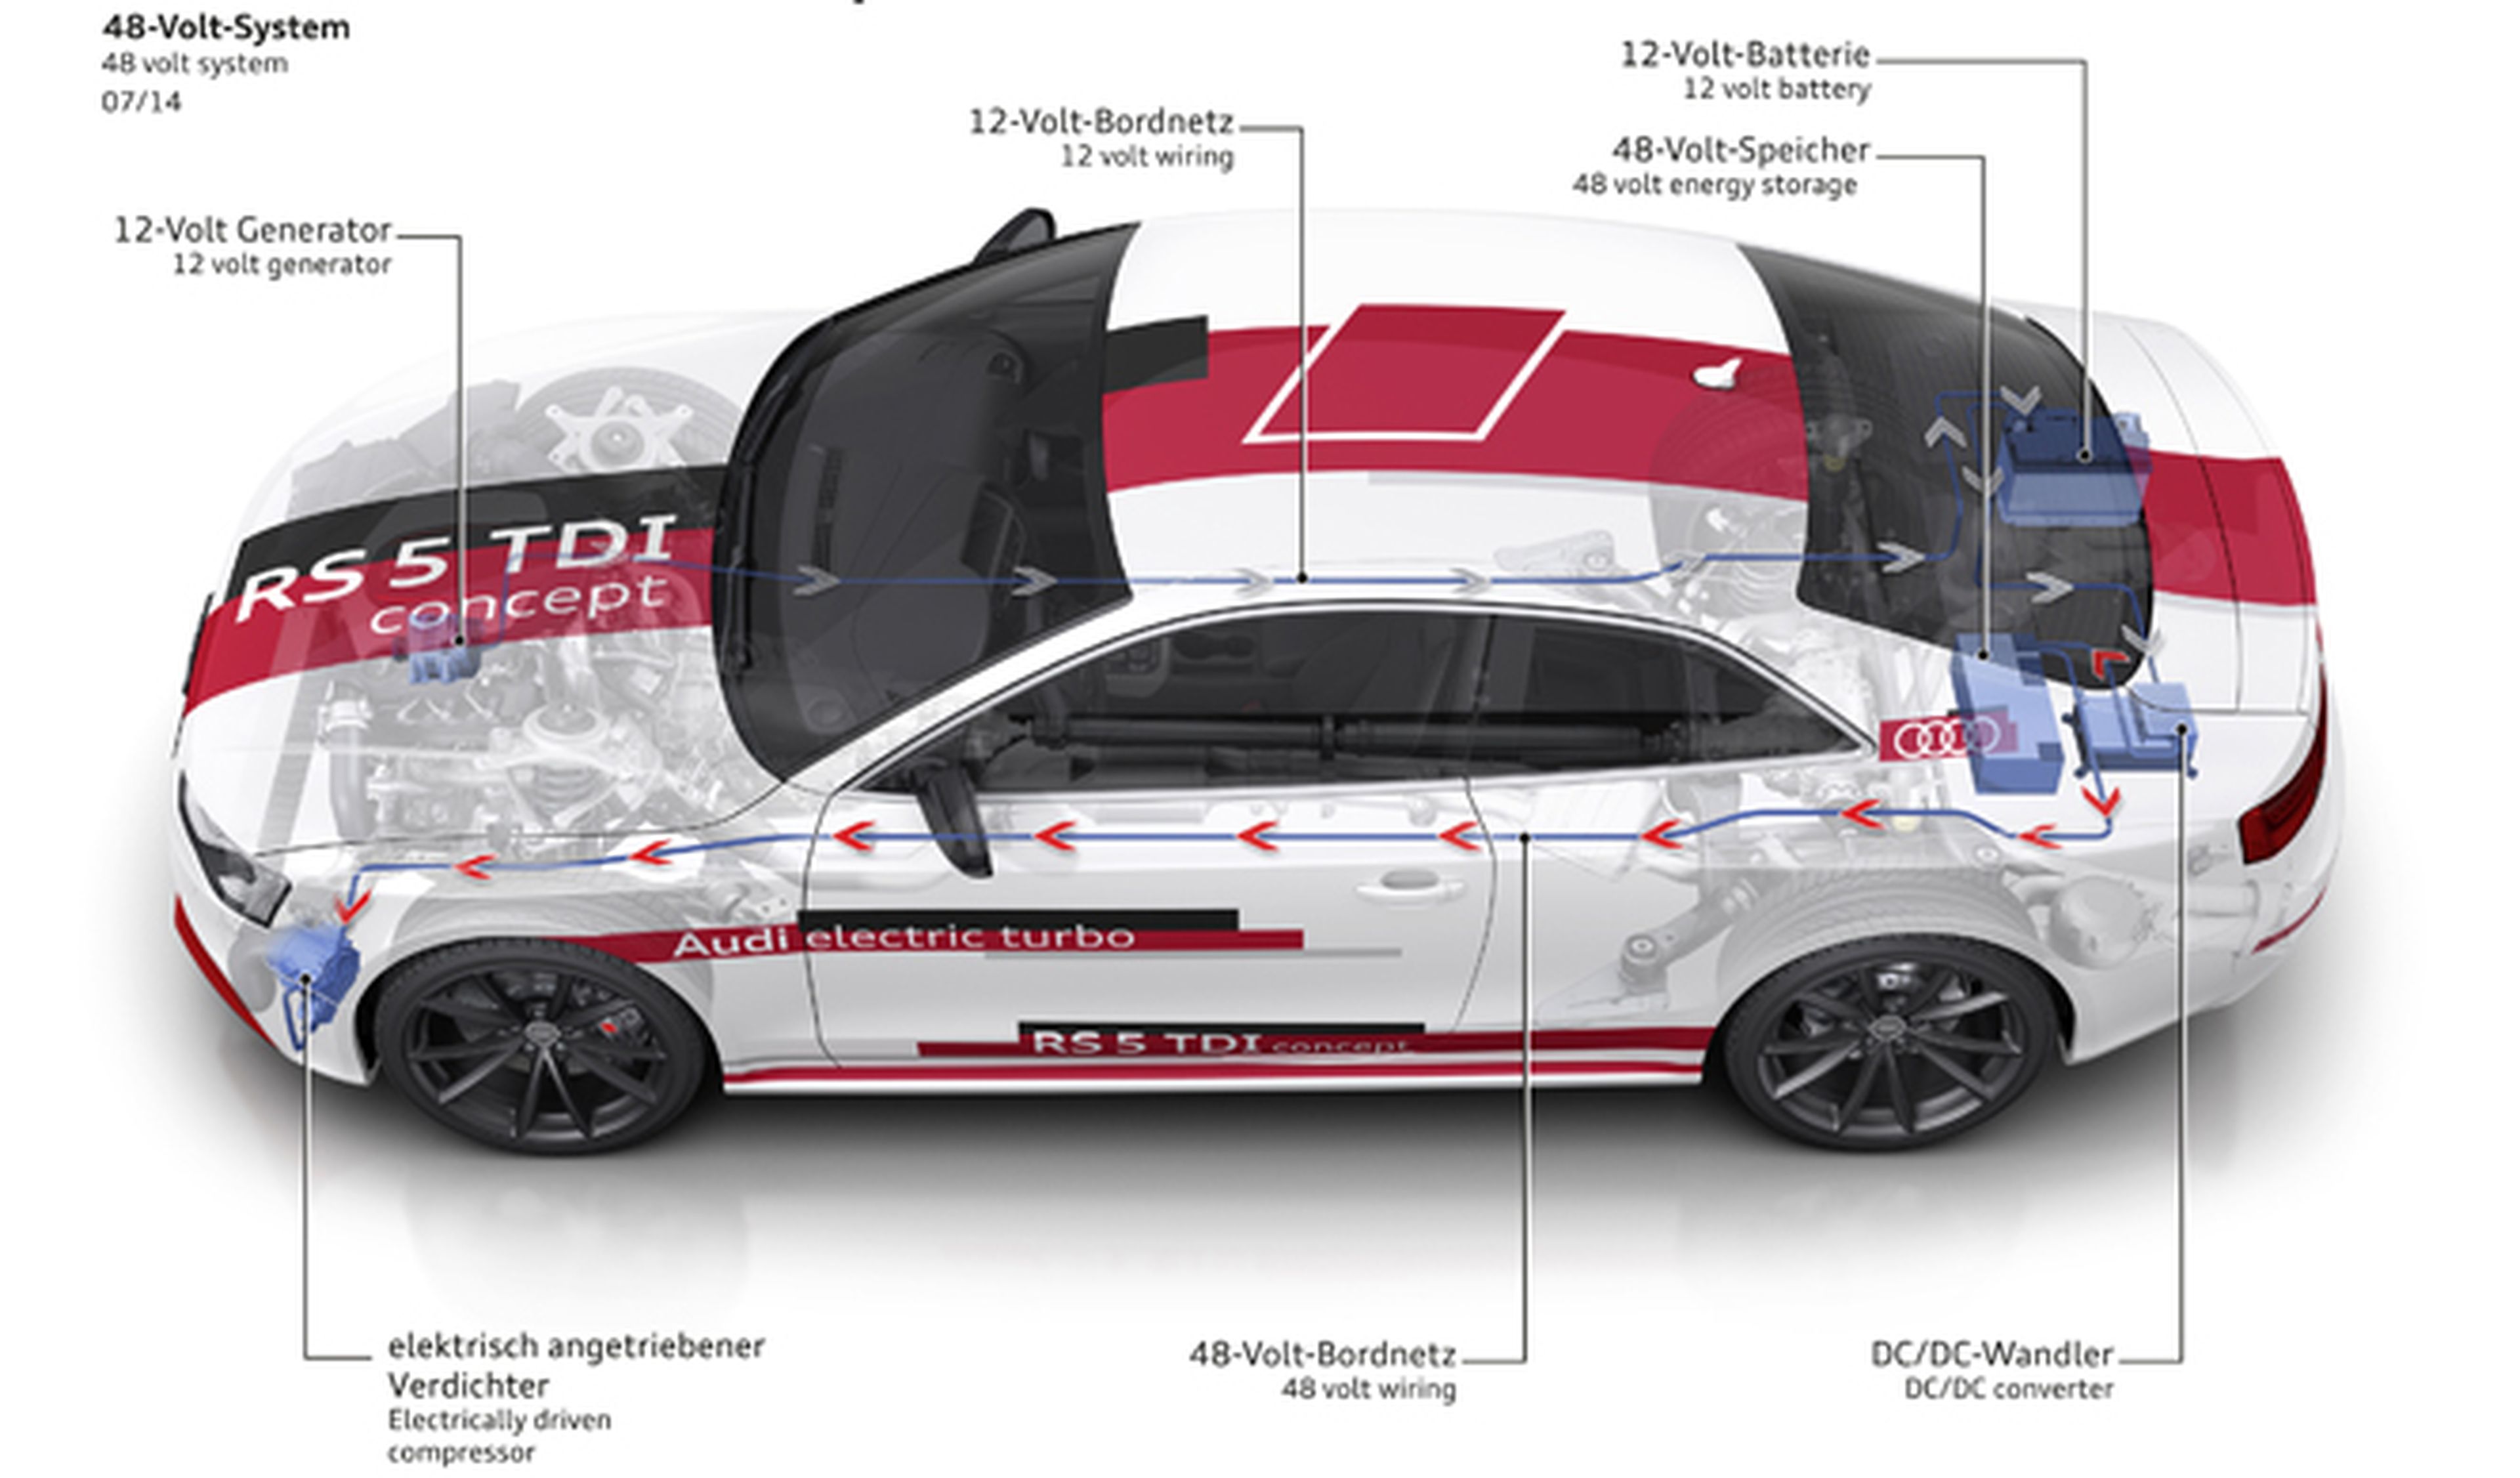 Audi cuatriplica la potencia eléctrica de sus coches